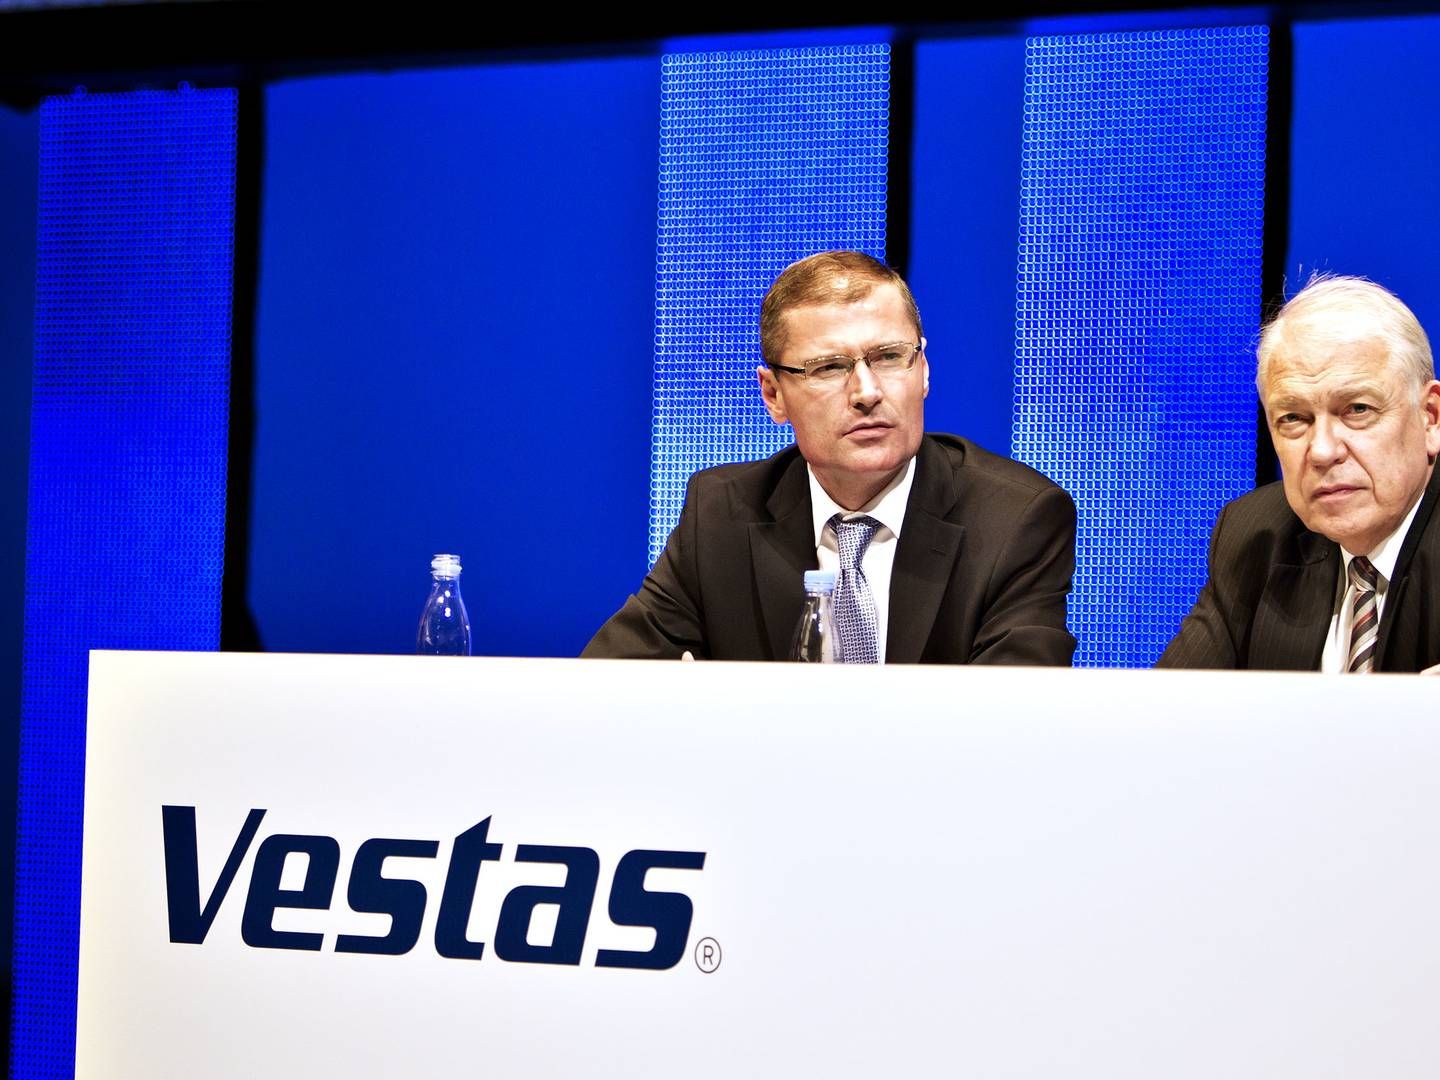 En stribe Vestas-investorer krævede 72,3 mio. kr. i erstatning af Ditlev Engel og Bent E. Carlsen. Nu har de opgivet kravet. | Foto: Sisse Dupont/ERH